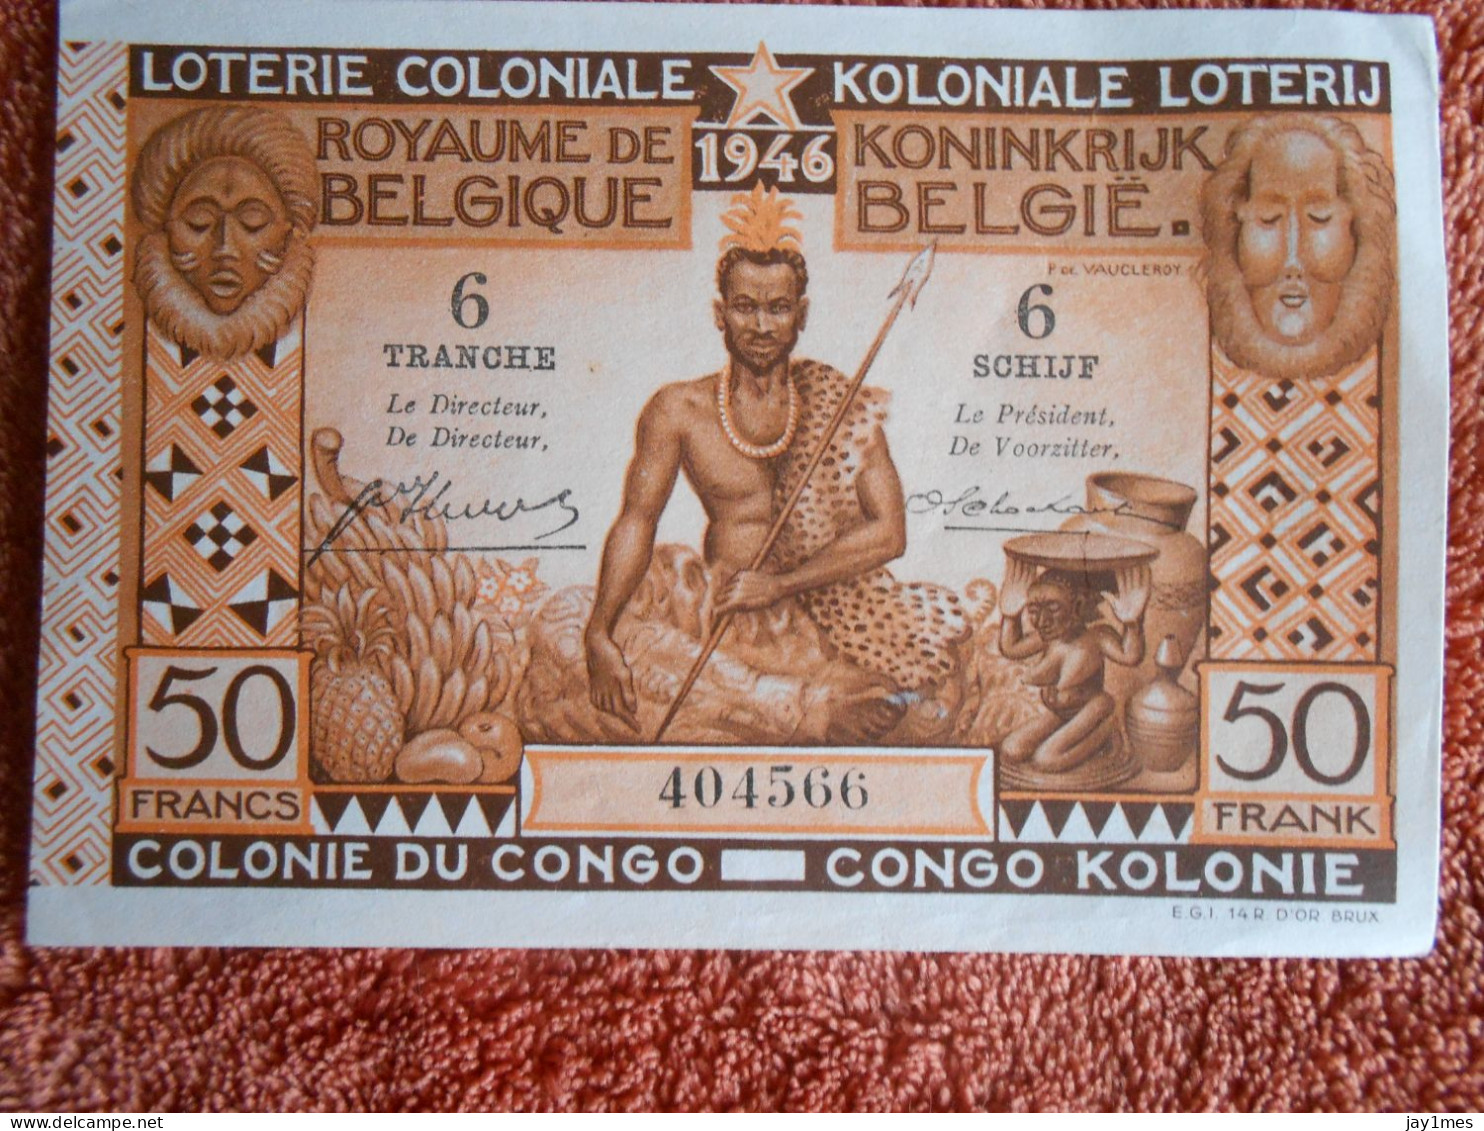 Loterie Coloniale Koloniale Loterij Congo 1946 - Lotterielose